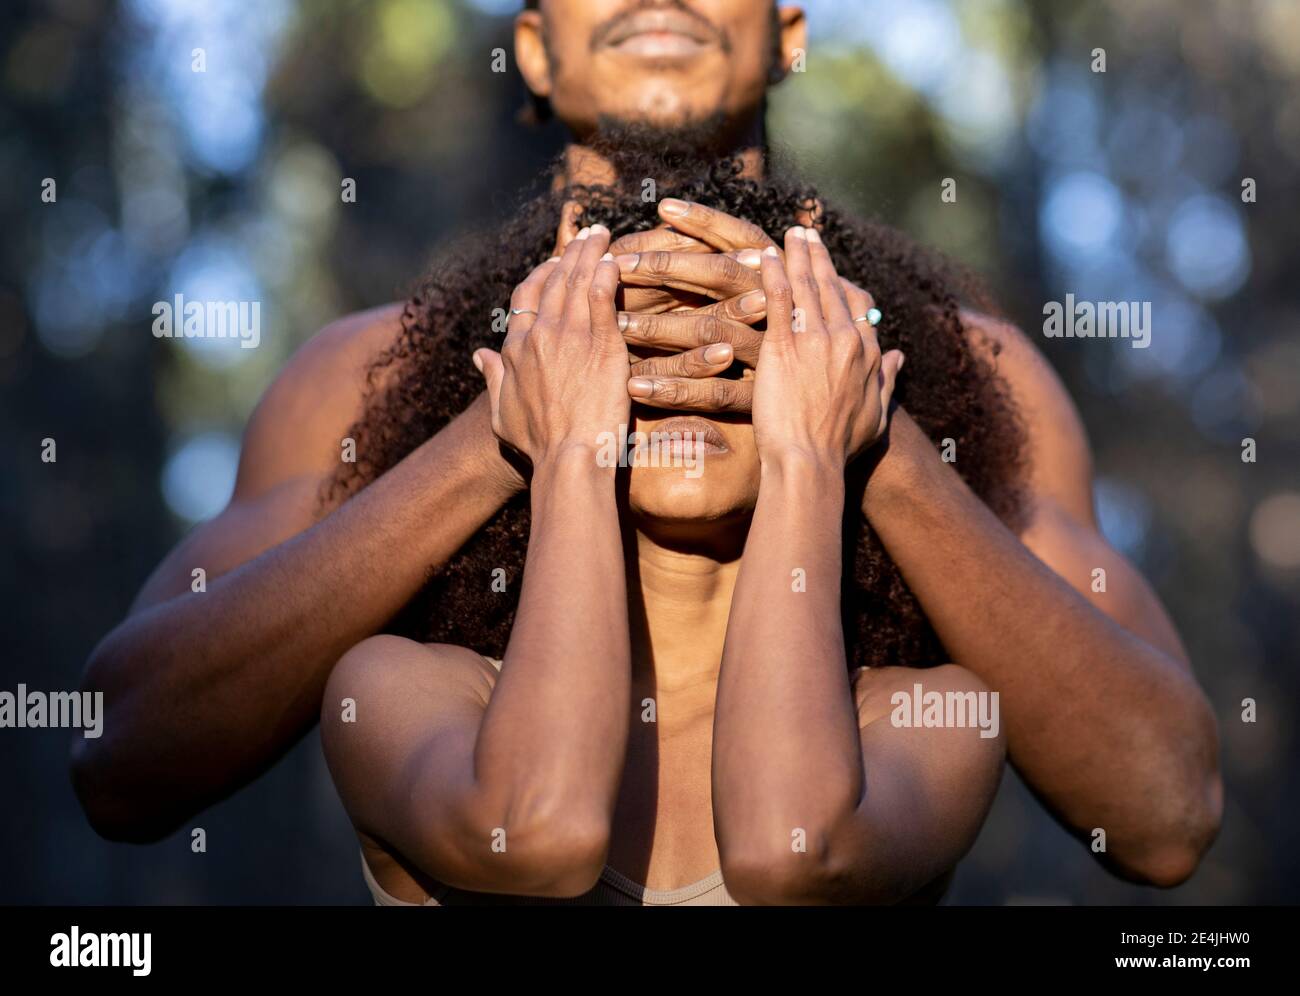 Ballerina maschile che copre gli occhi della partner femminile durante la performance Foto Stock